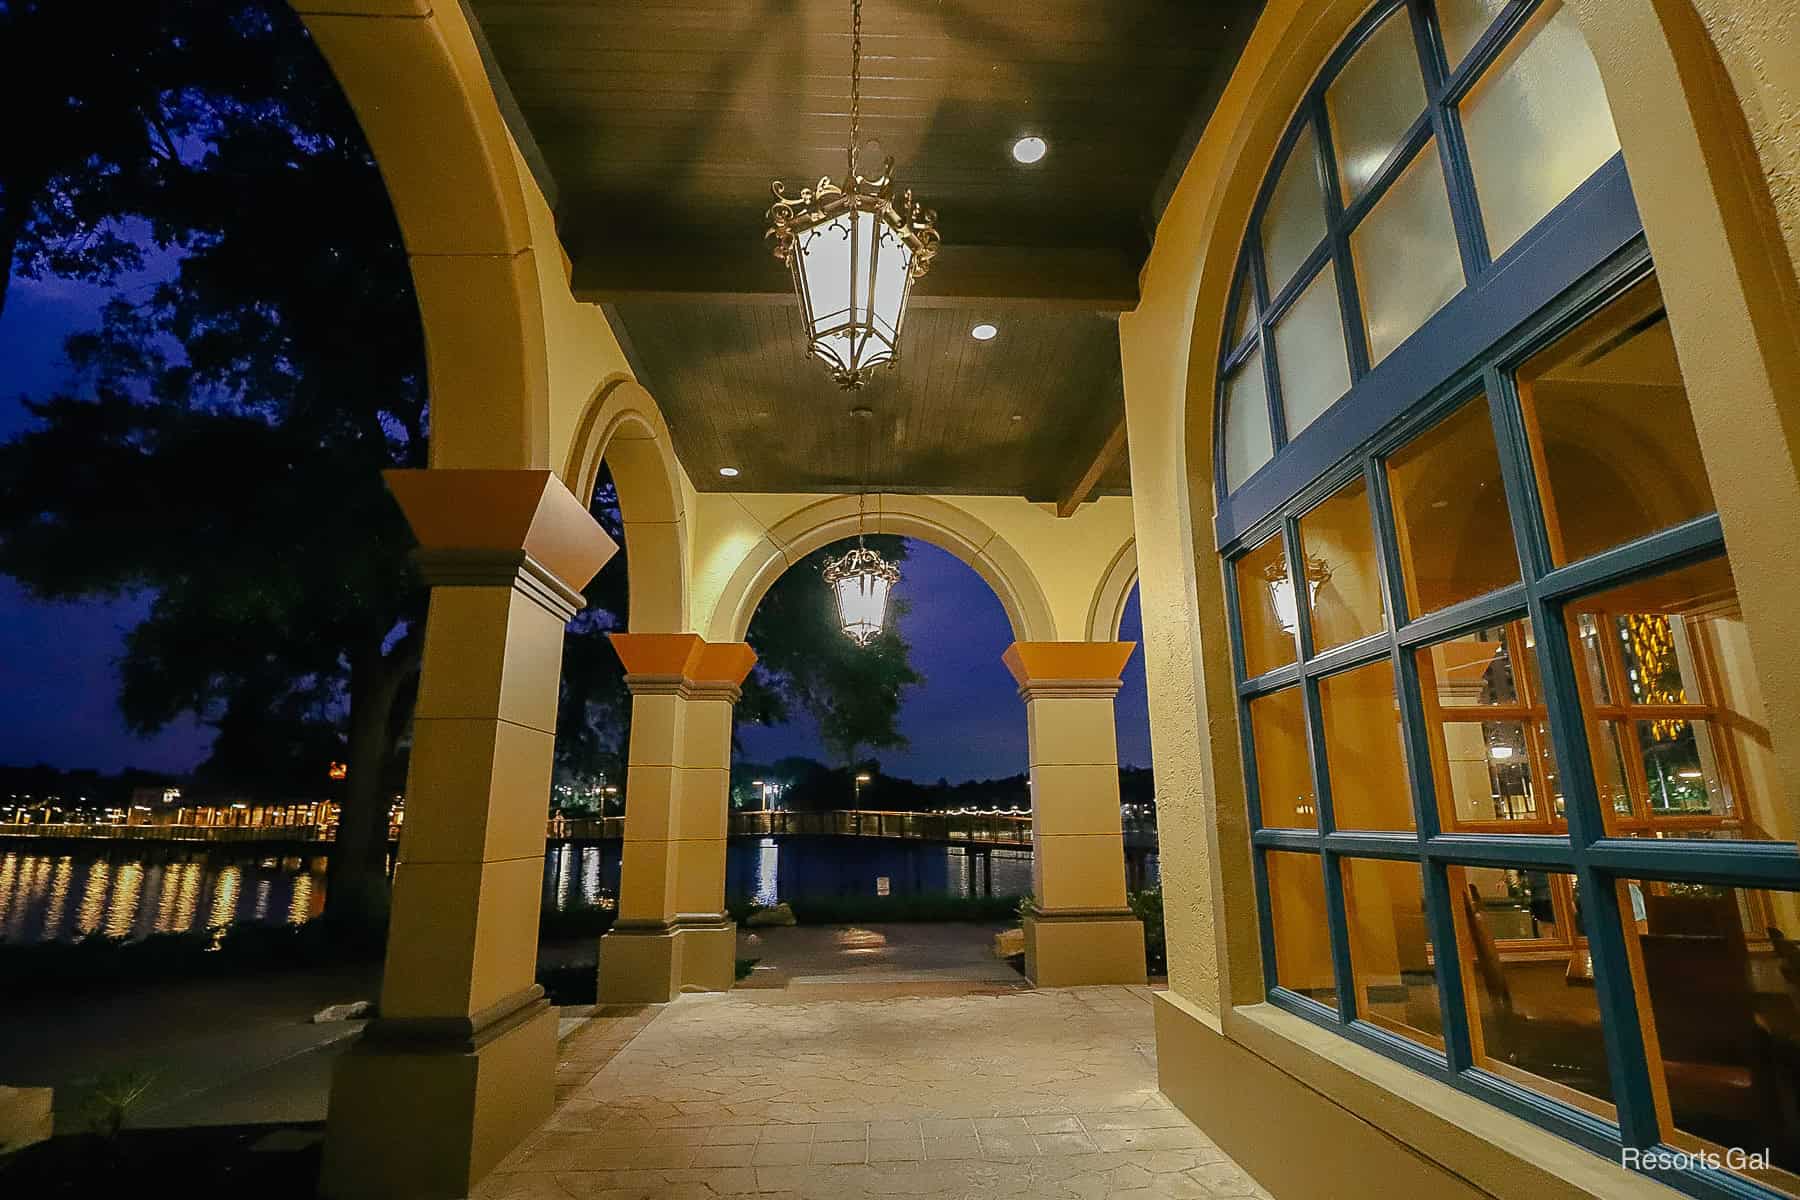 light fixtures at night over an exterior walkway at Coronado Springs 